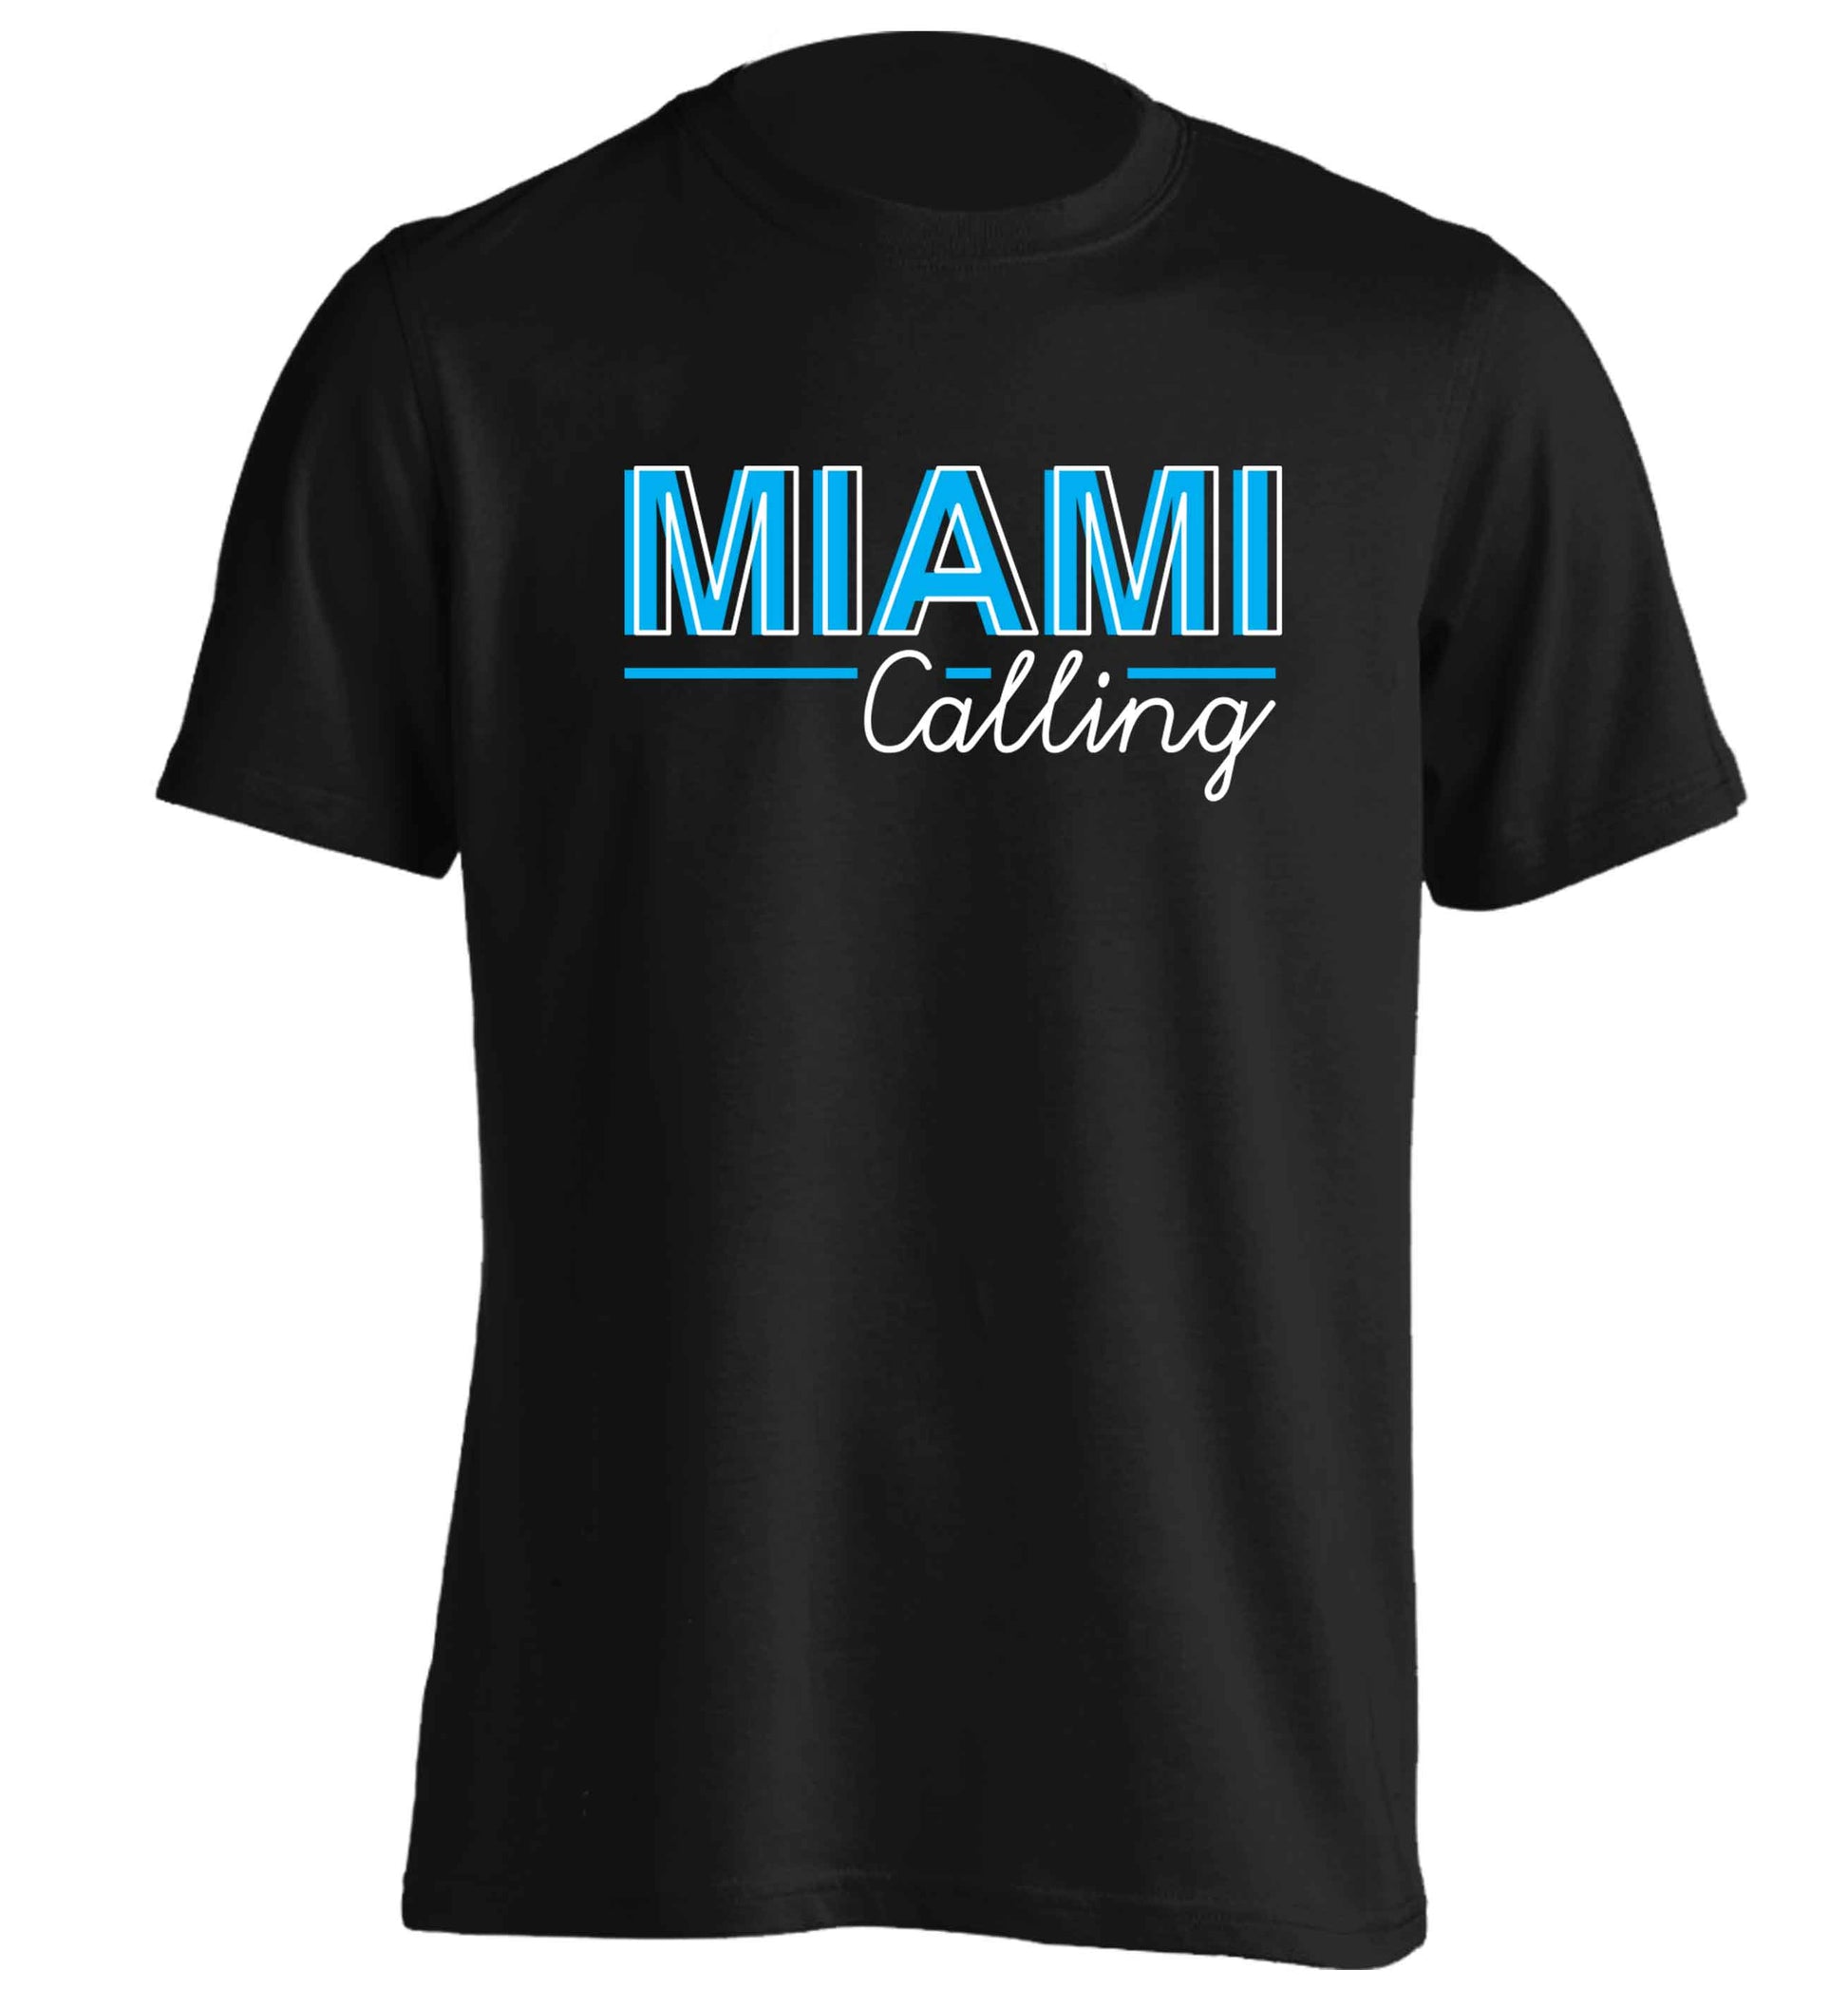 Miami calling adults unisex black Tshirt 2XL